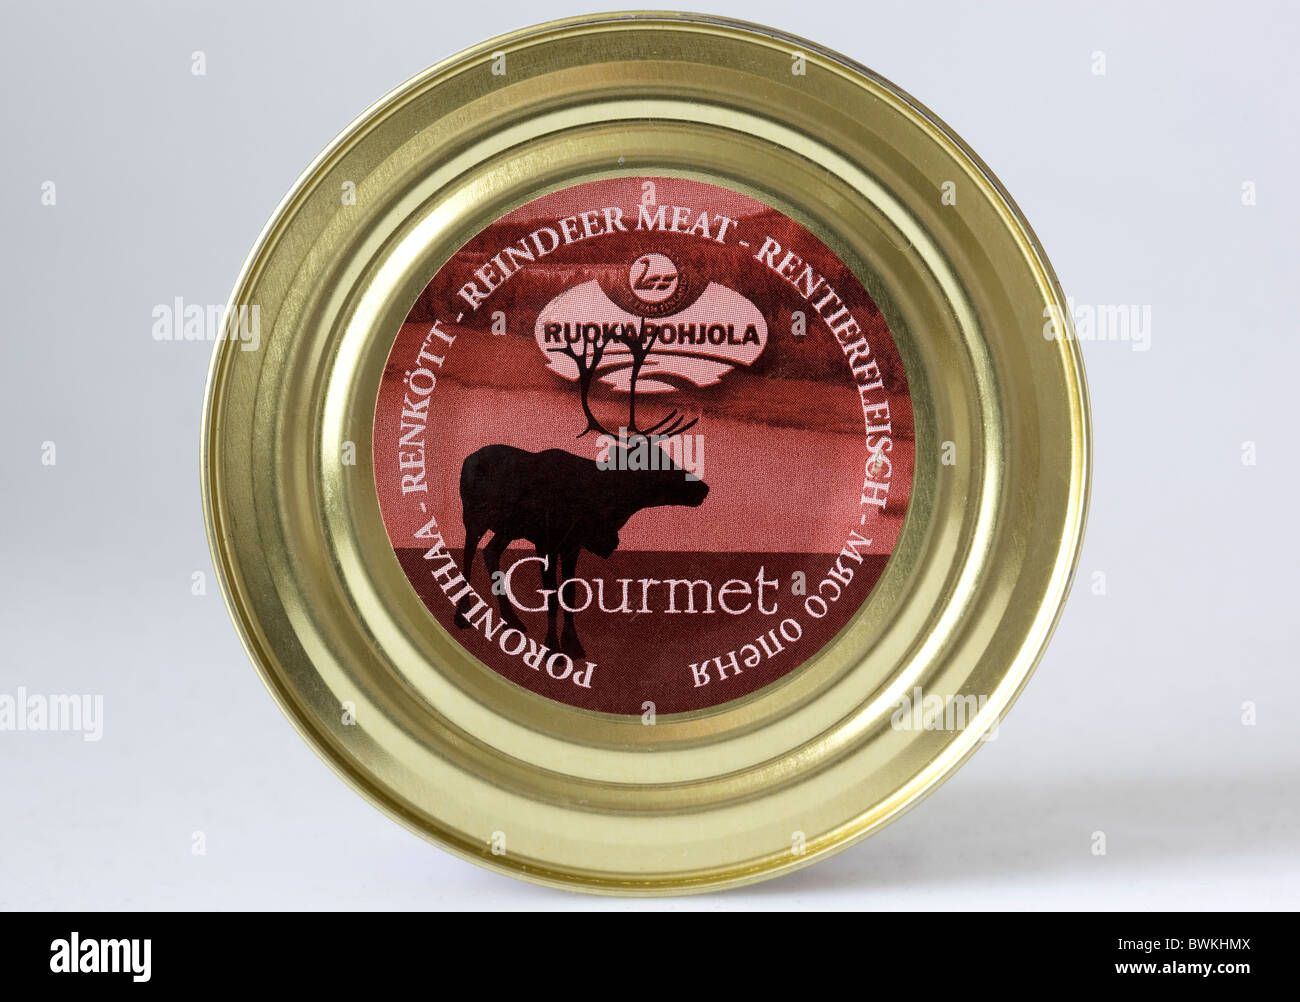 Gourmet Tin of Reindeer Meat Stock Photo